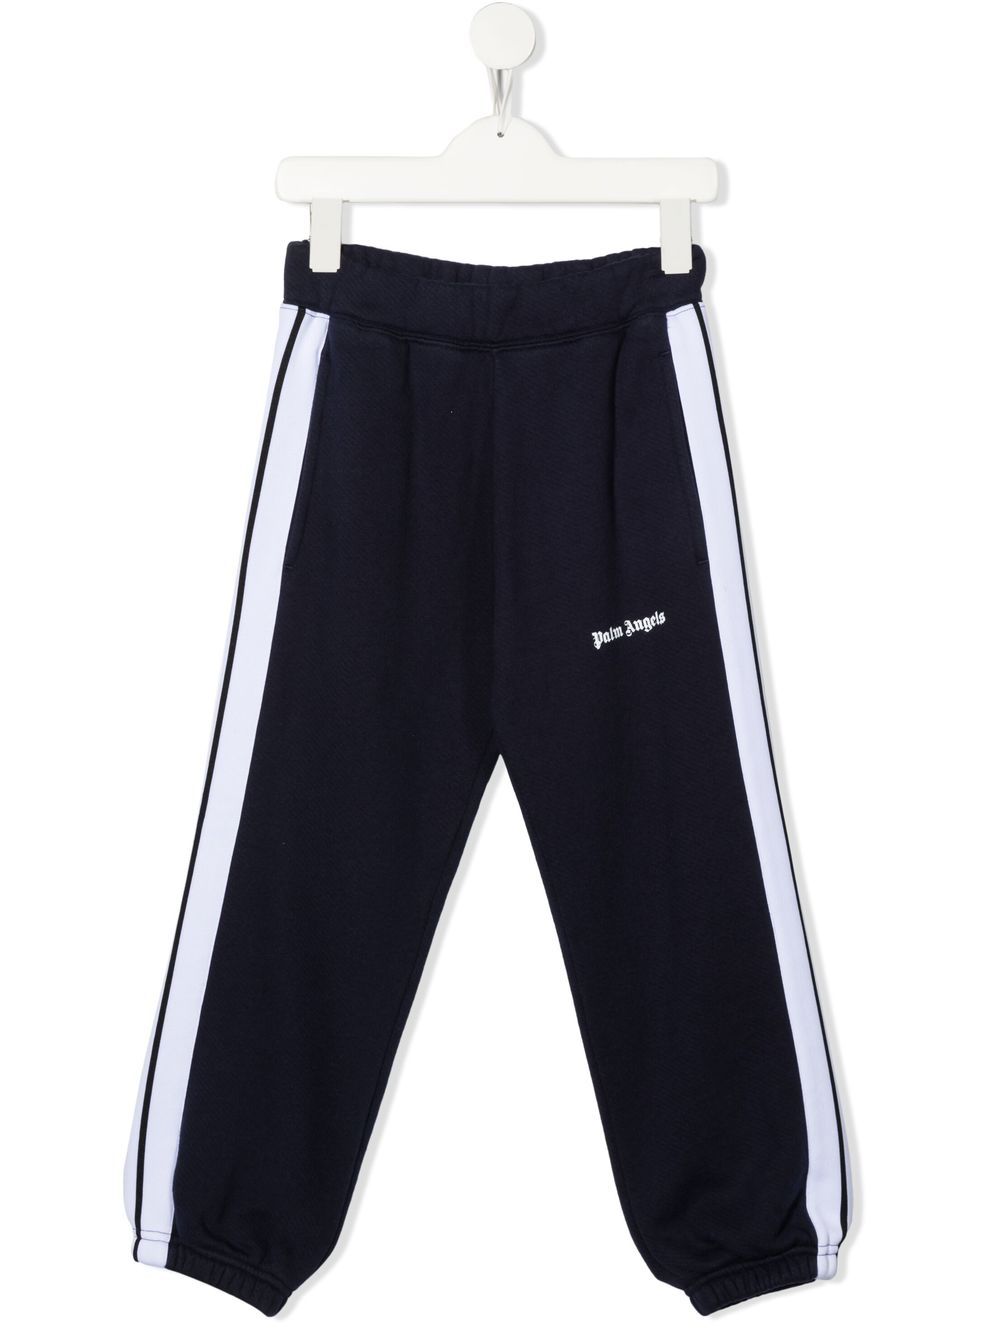 Pantaloni sportivi con banda laterale stampata con logo